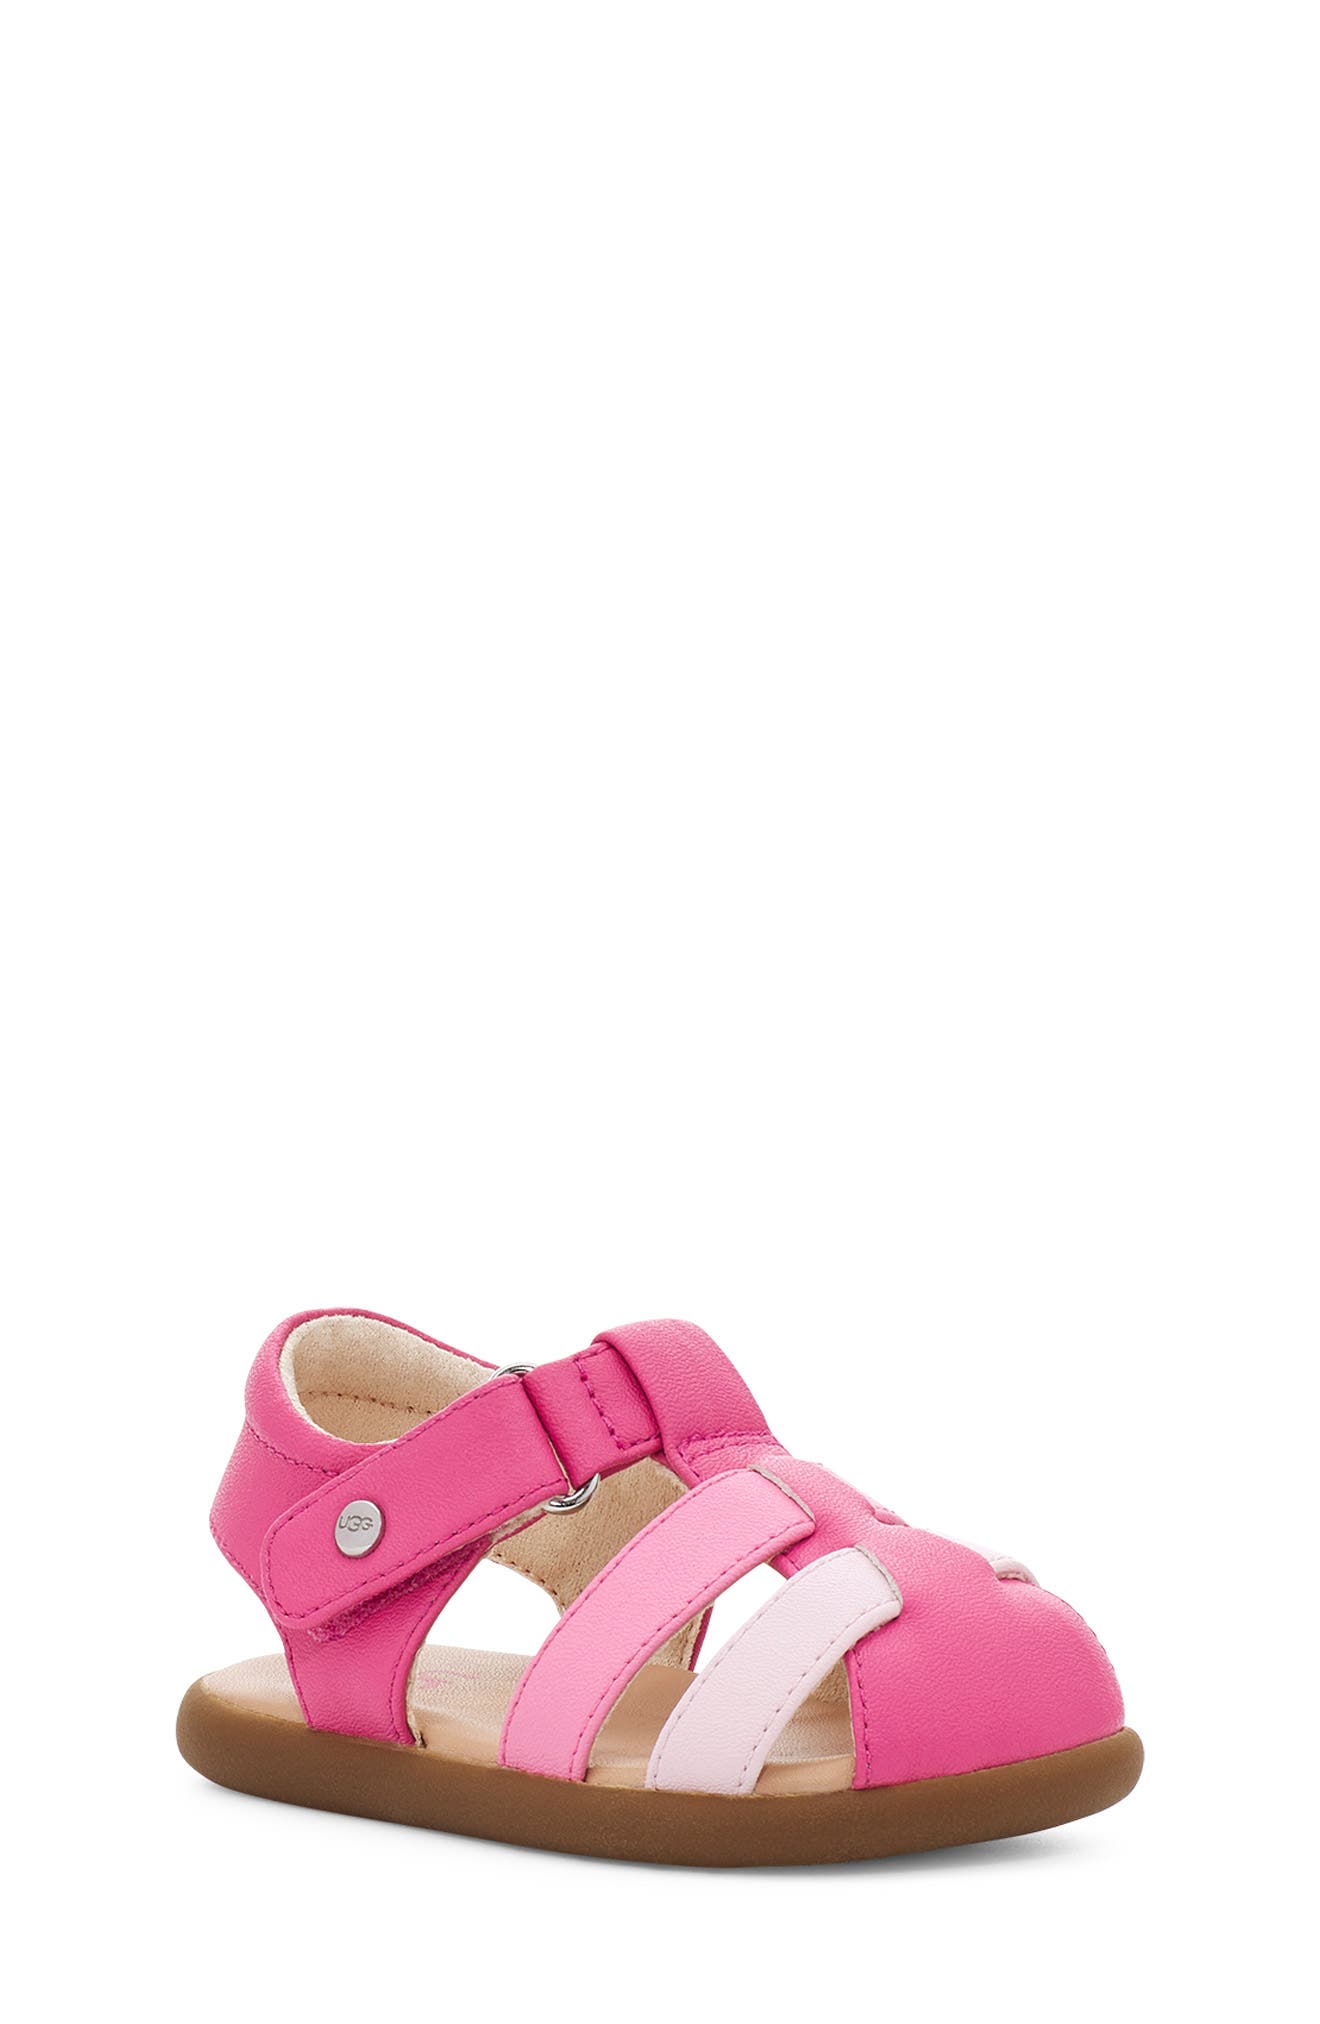 ugg toddler girl sandals